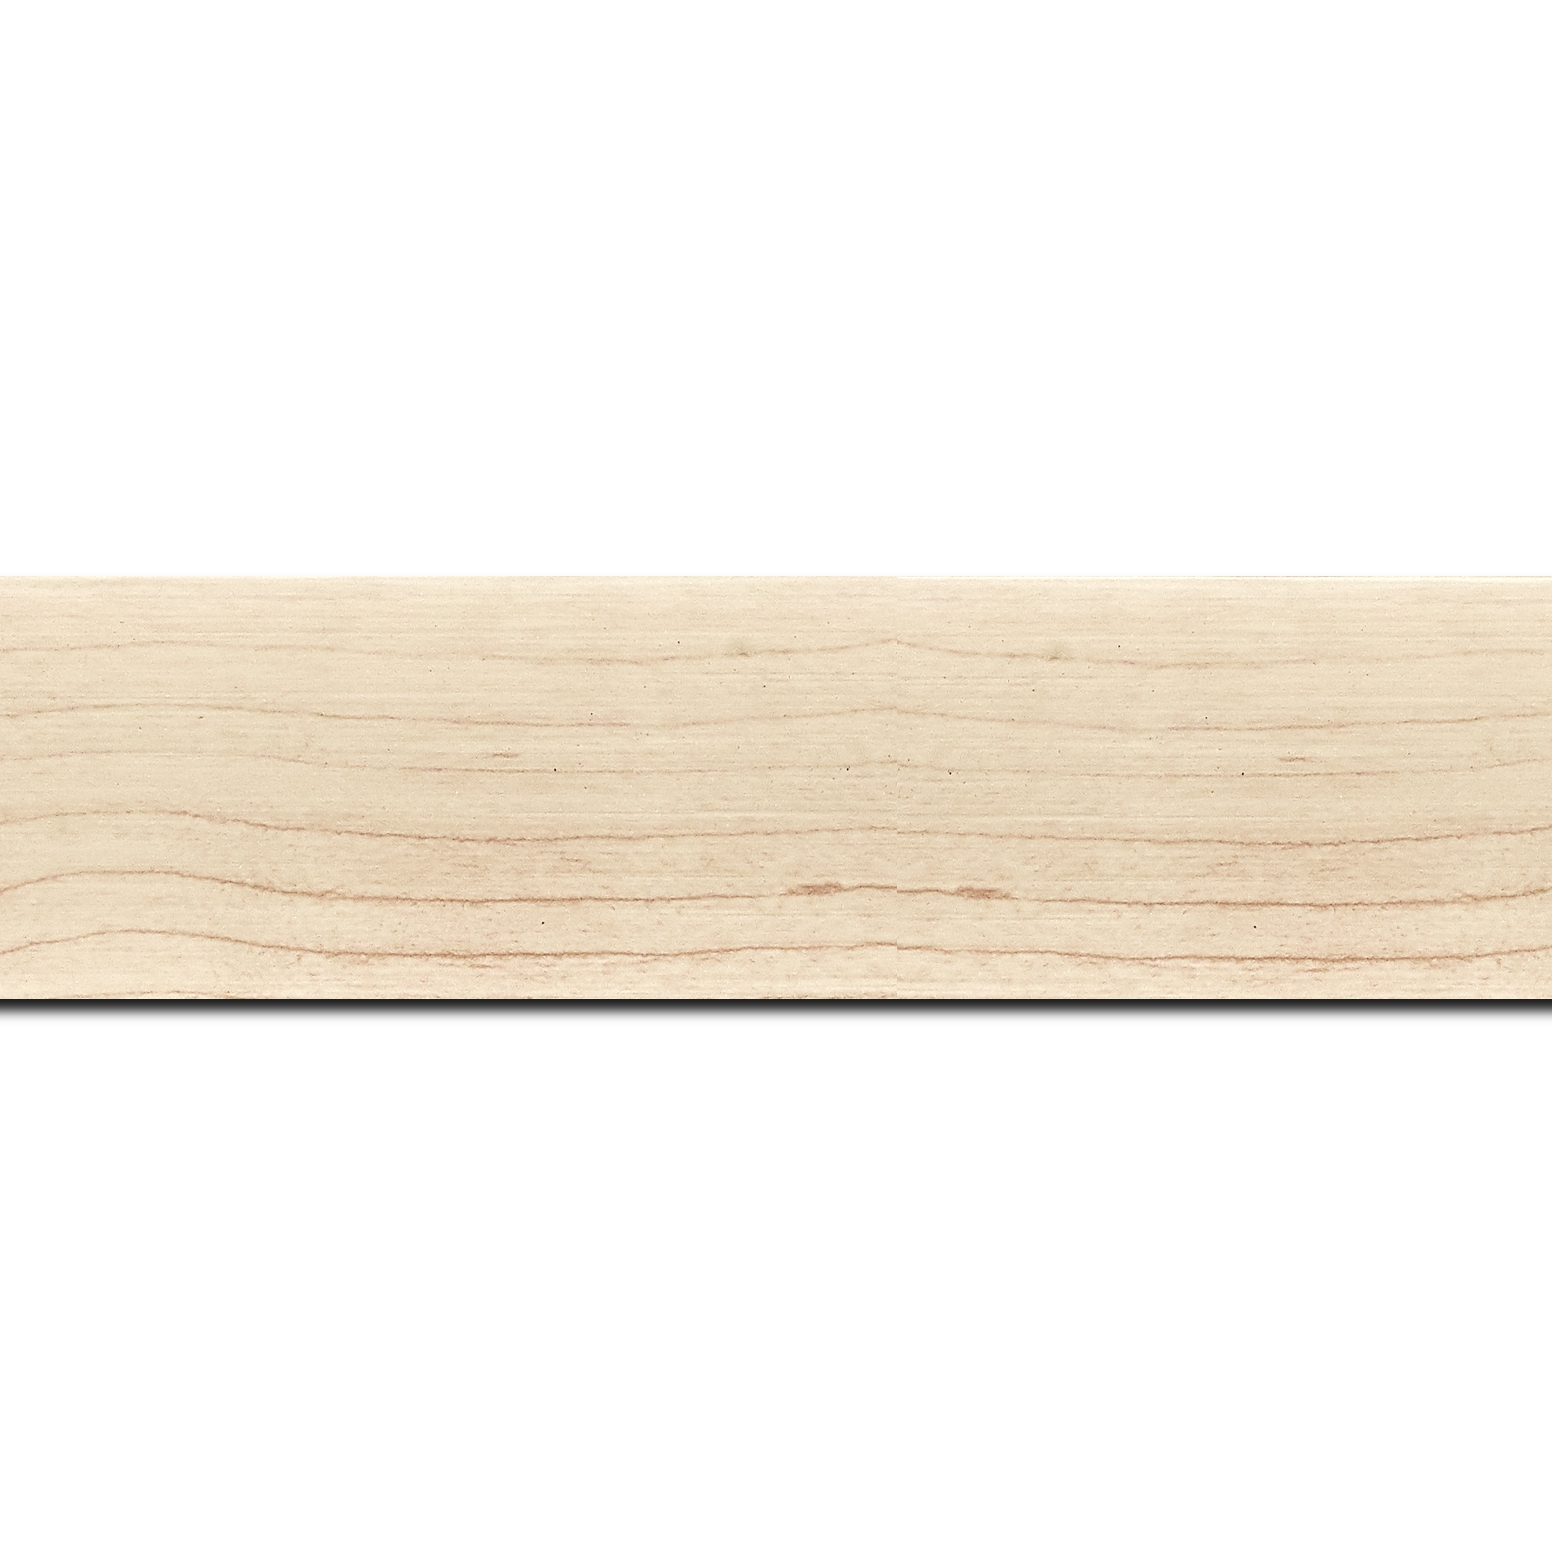 Pack par 12m, bois profil plat largeur 4.2cm décor bois blanc naturel(longueur baguette pouvant varier entre 2.40m et 3m selon arrivage des bois)